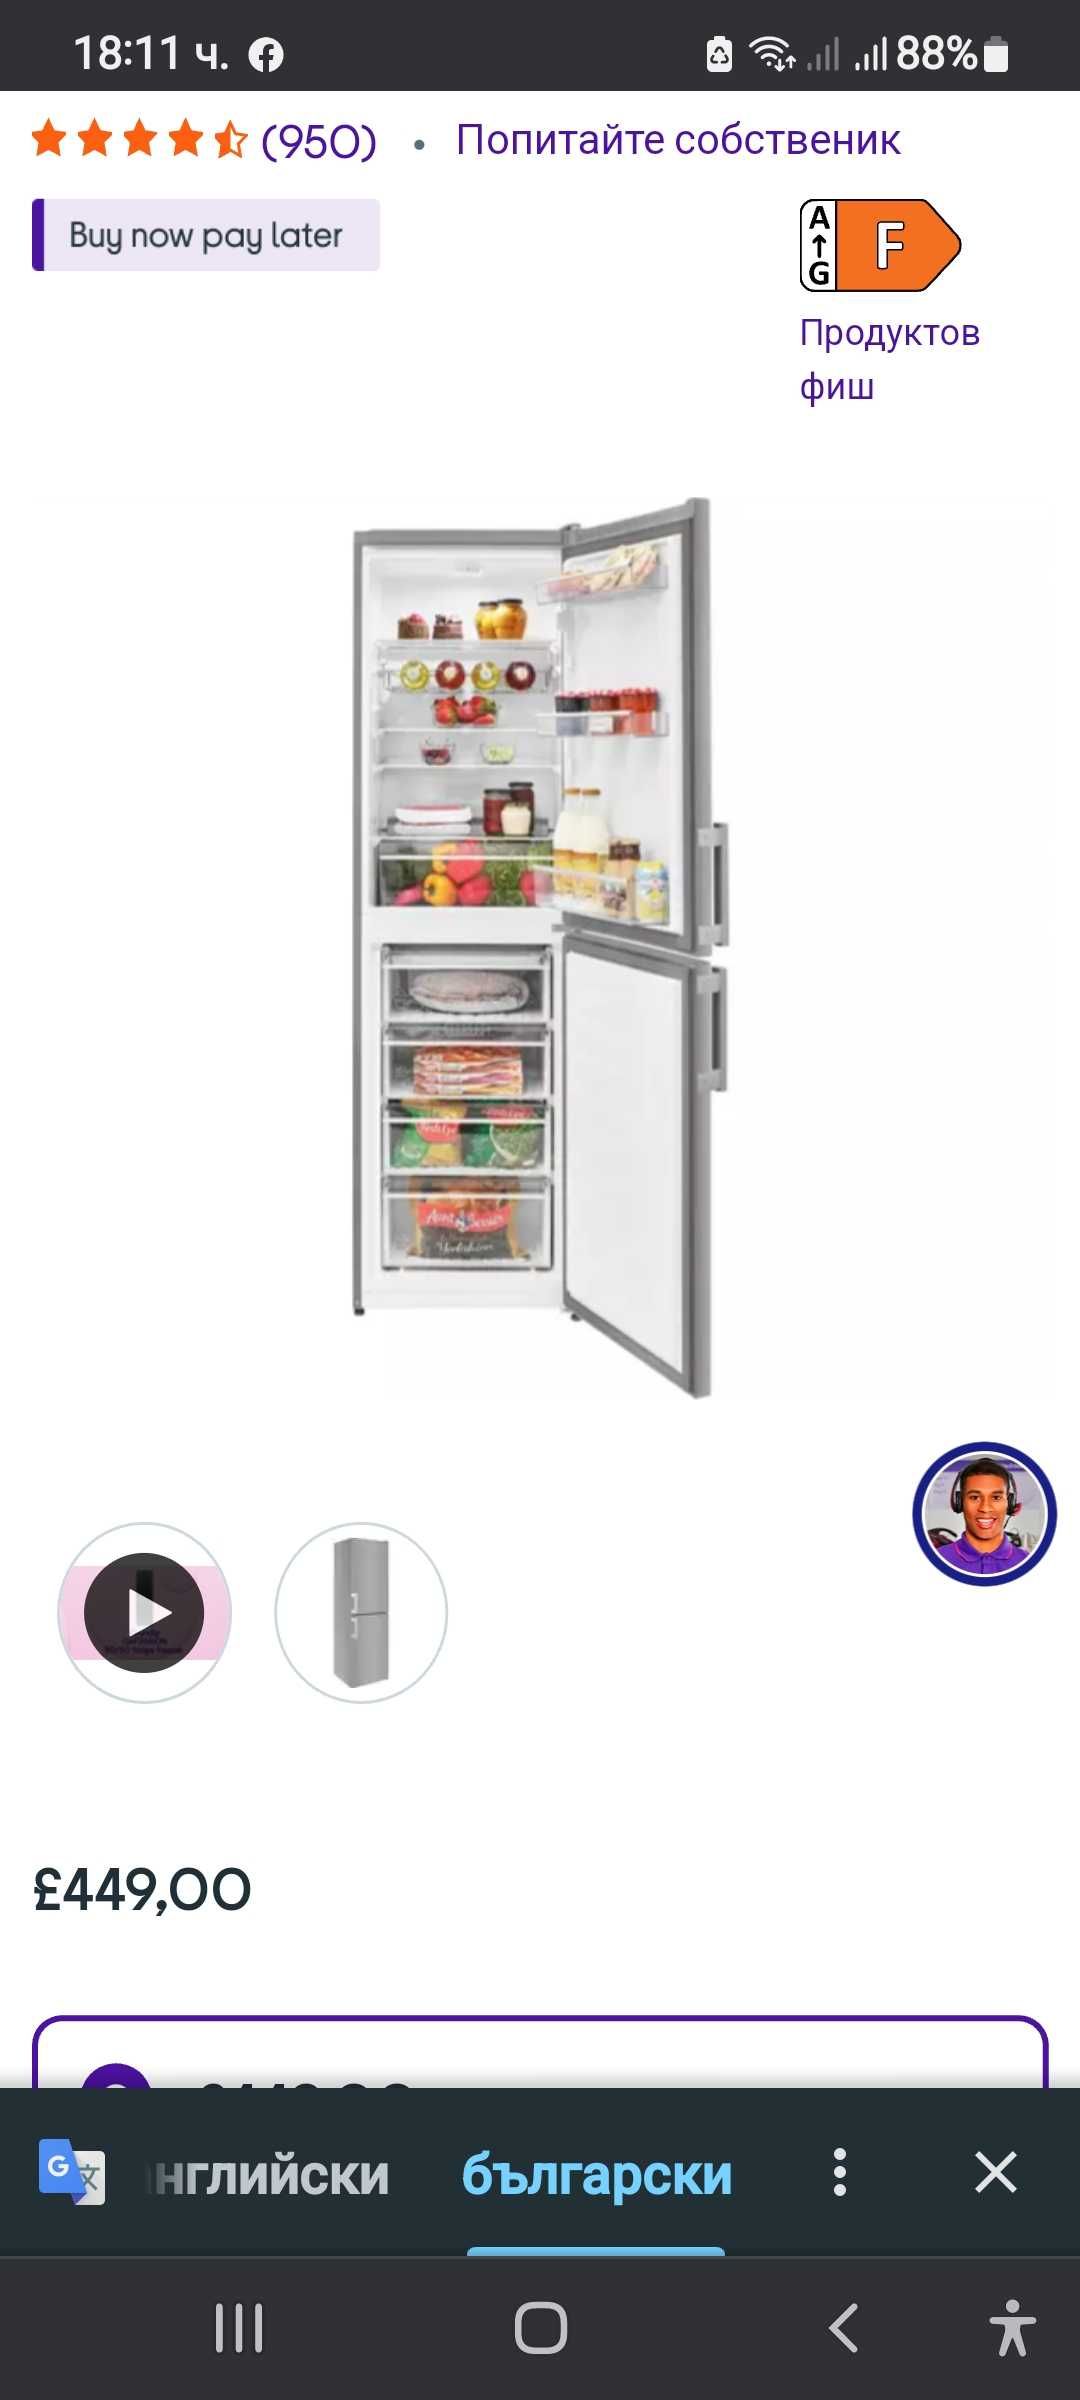 Хладилник инокс в отлично състояние със 4 фризерни чекмеджета.